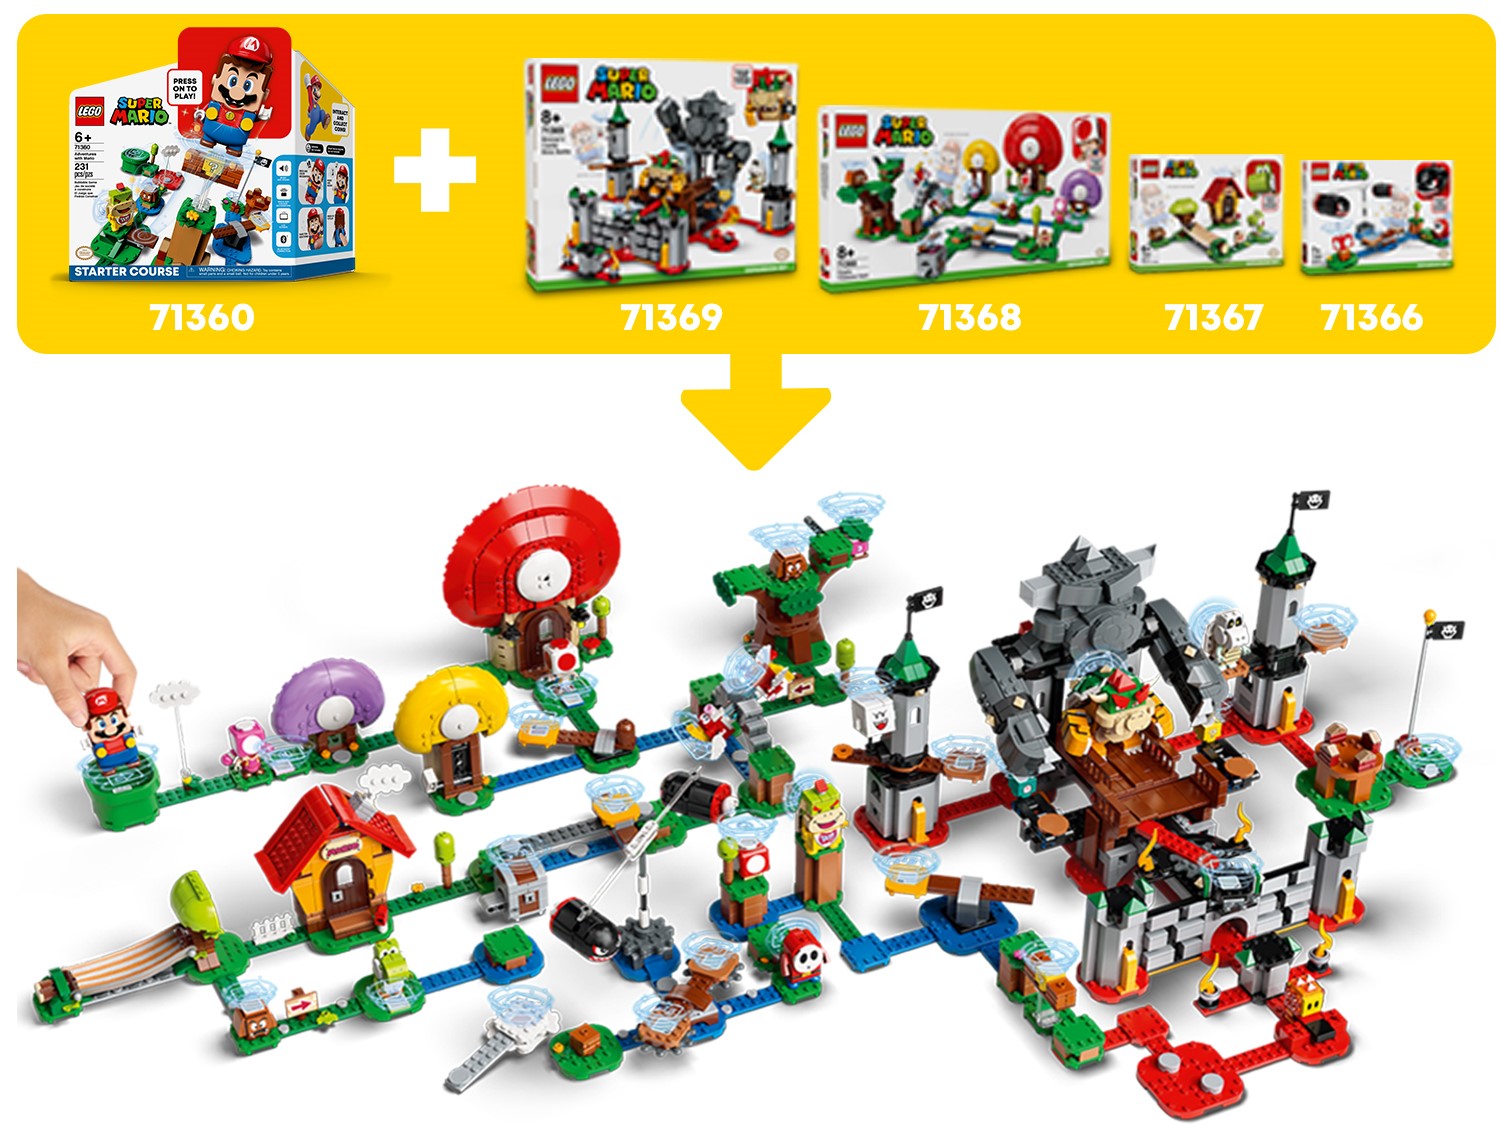 LEGO Whomp/'s Lava Trouble Expansion Set Super Mario 71364 for sale online